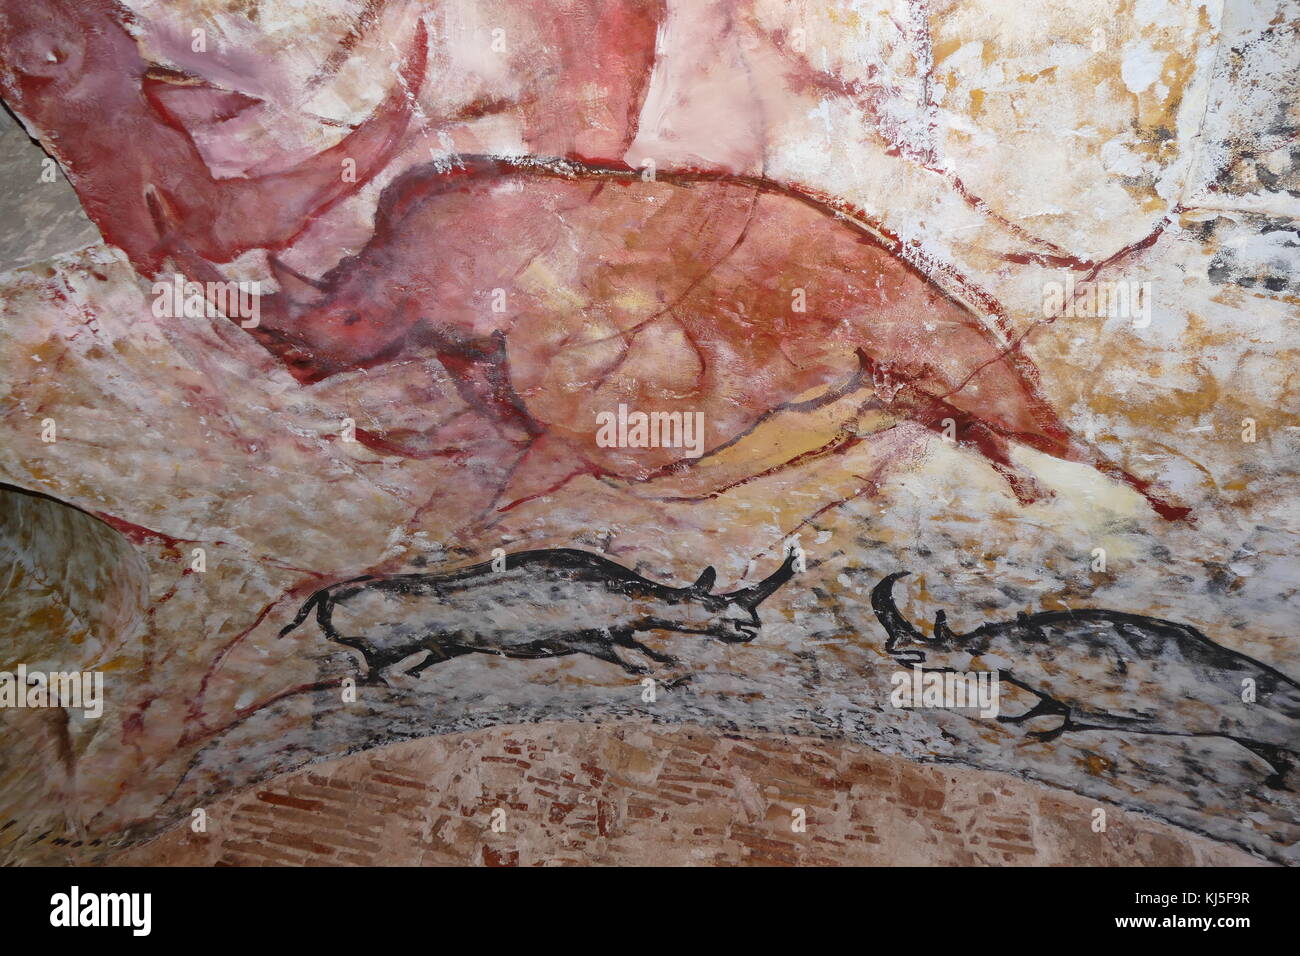 Peinture rupestre trouvé dans la grotte d'Altamira, situé dans la région de Cantabrie, Espagne, datant du paléolithique supérieur. Banque D'Images